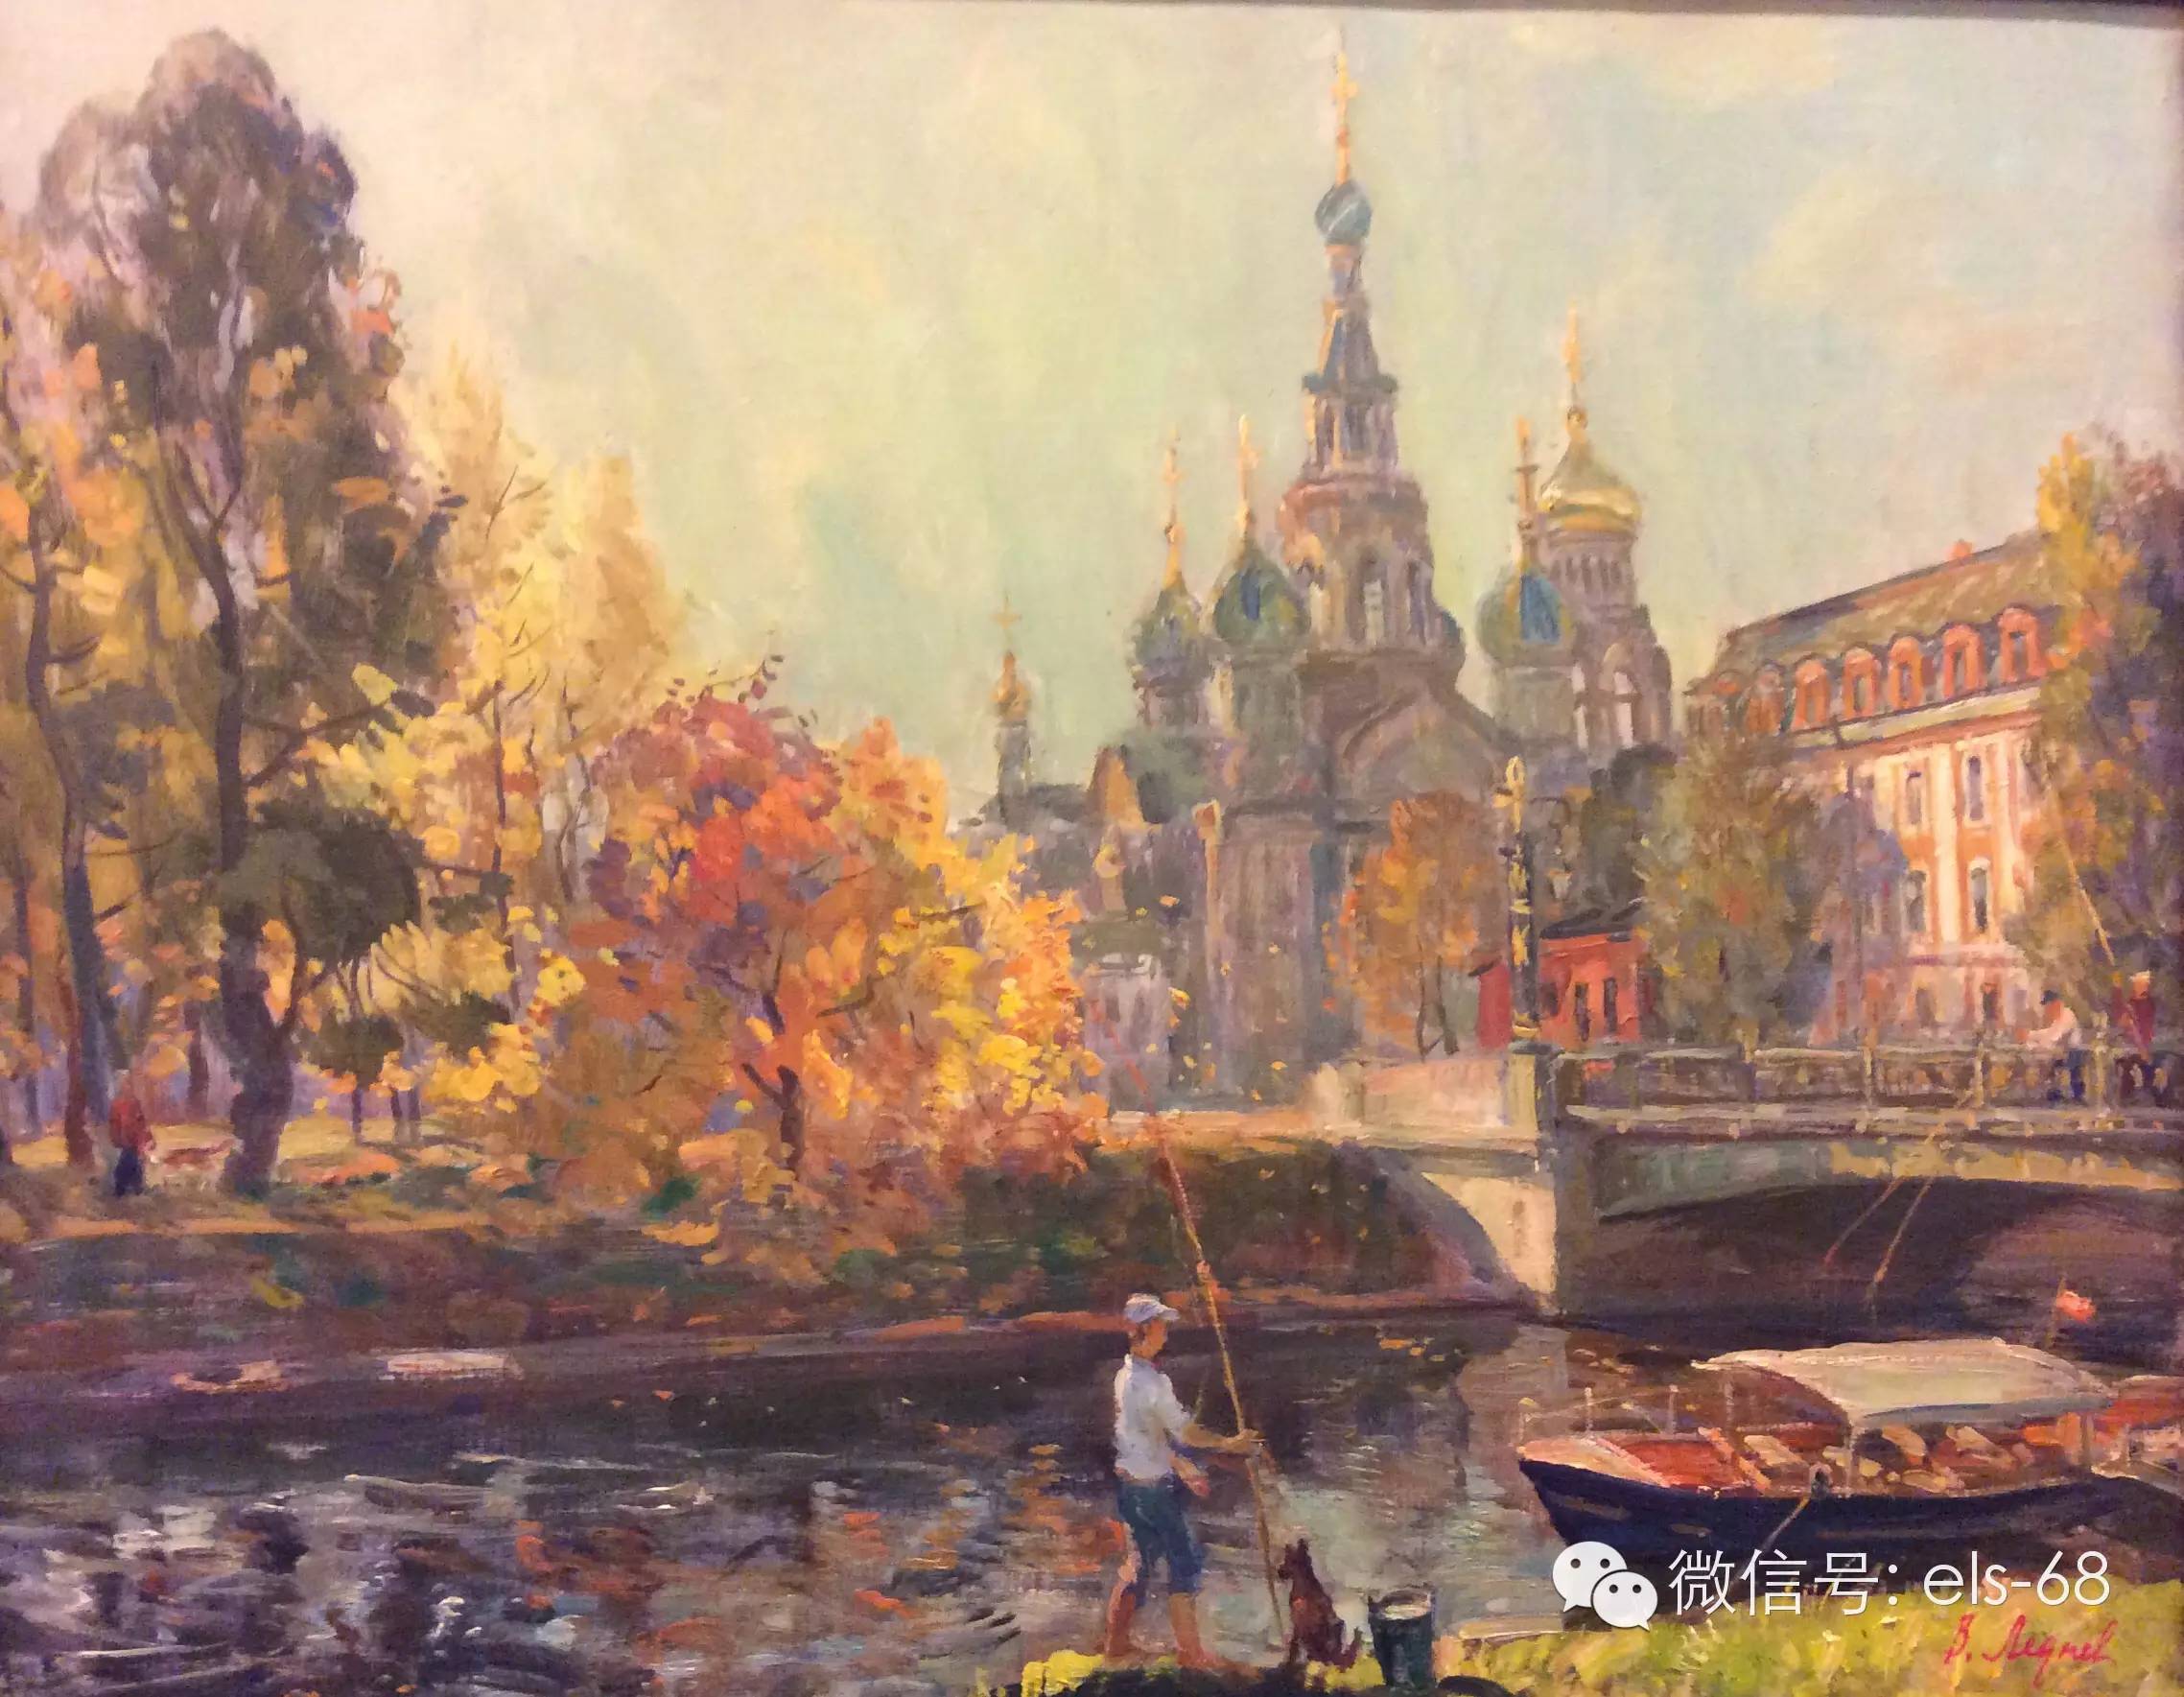 【艺术】俄罗斯人民艺术家瓦列里列德涅夫油画作品